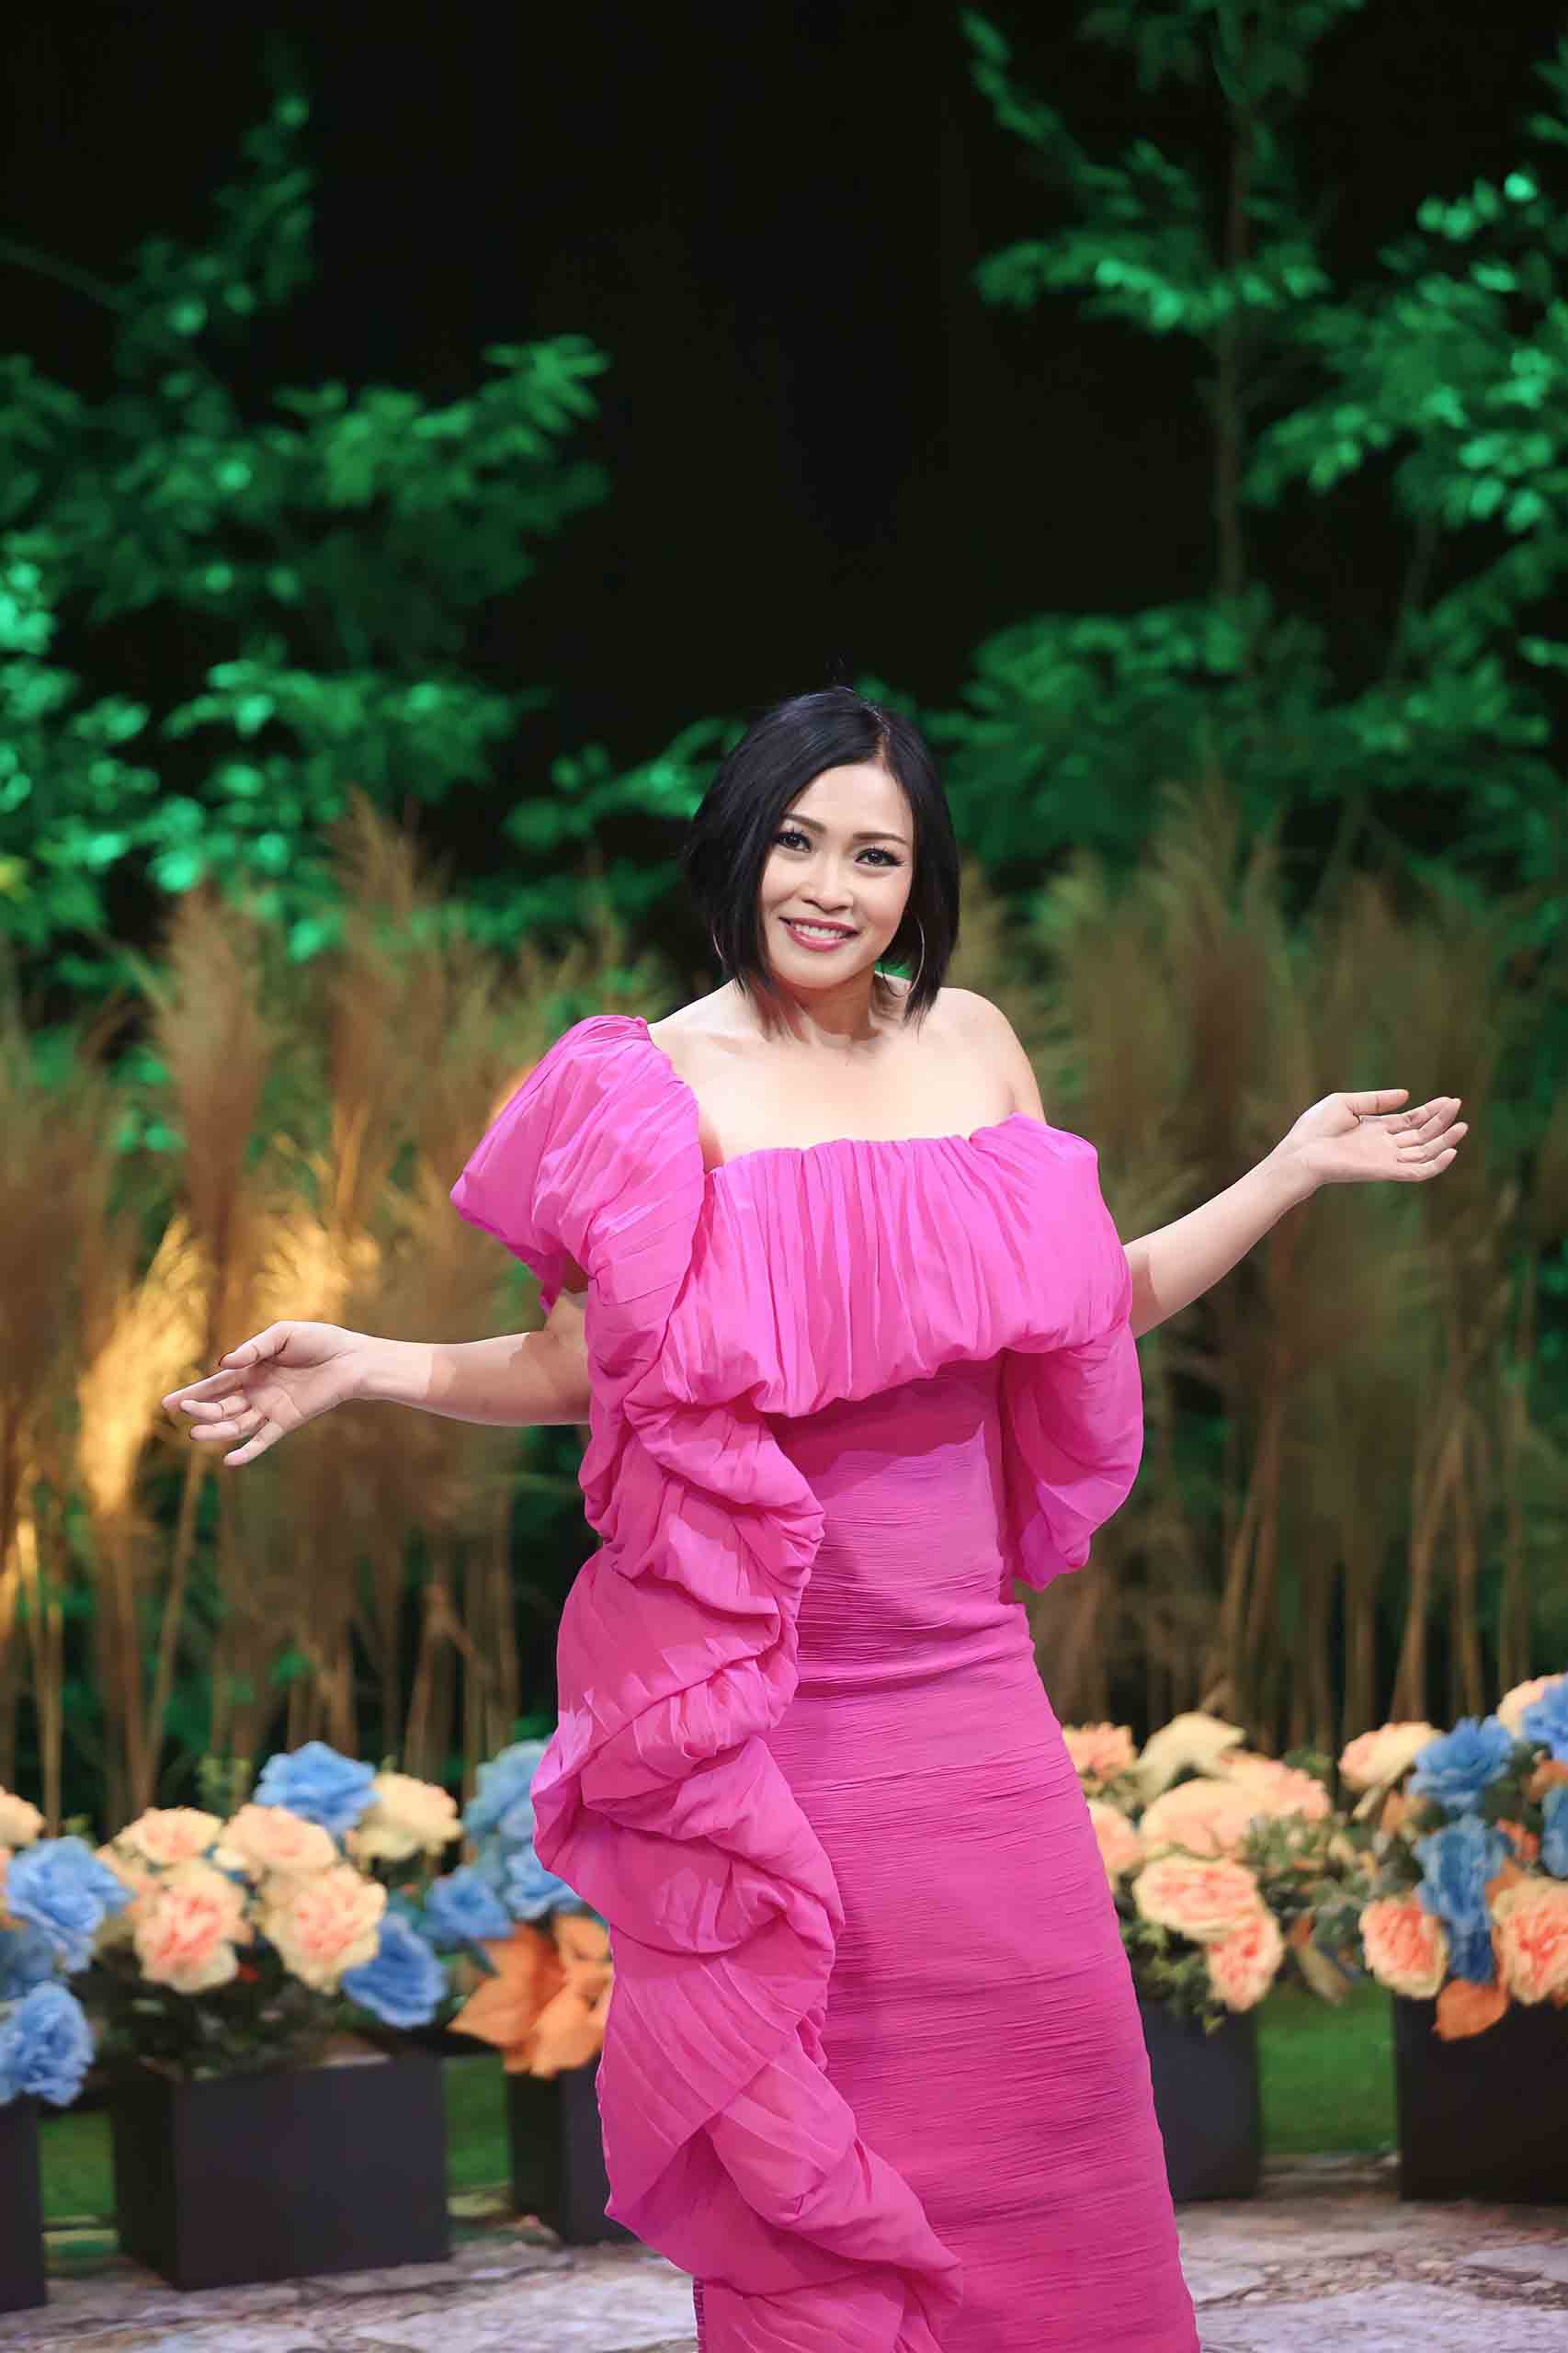 Là nữ ca sĩ khách mời duy nhất trong đợt ghi hình đầu tiên, ca sĩ Phương Thanh không giấu được sự thích thú khi mình trở thành “bông hoa” đẹp trong một “vườn” trai đẹp, tài năng, danh tiếng.